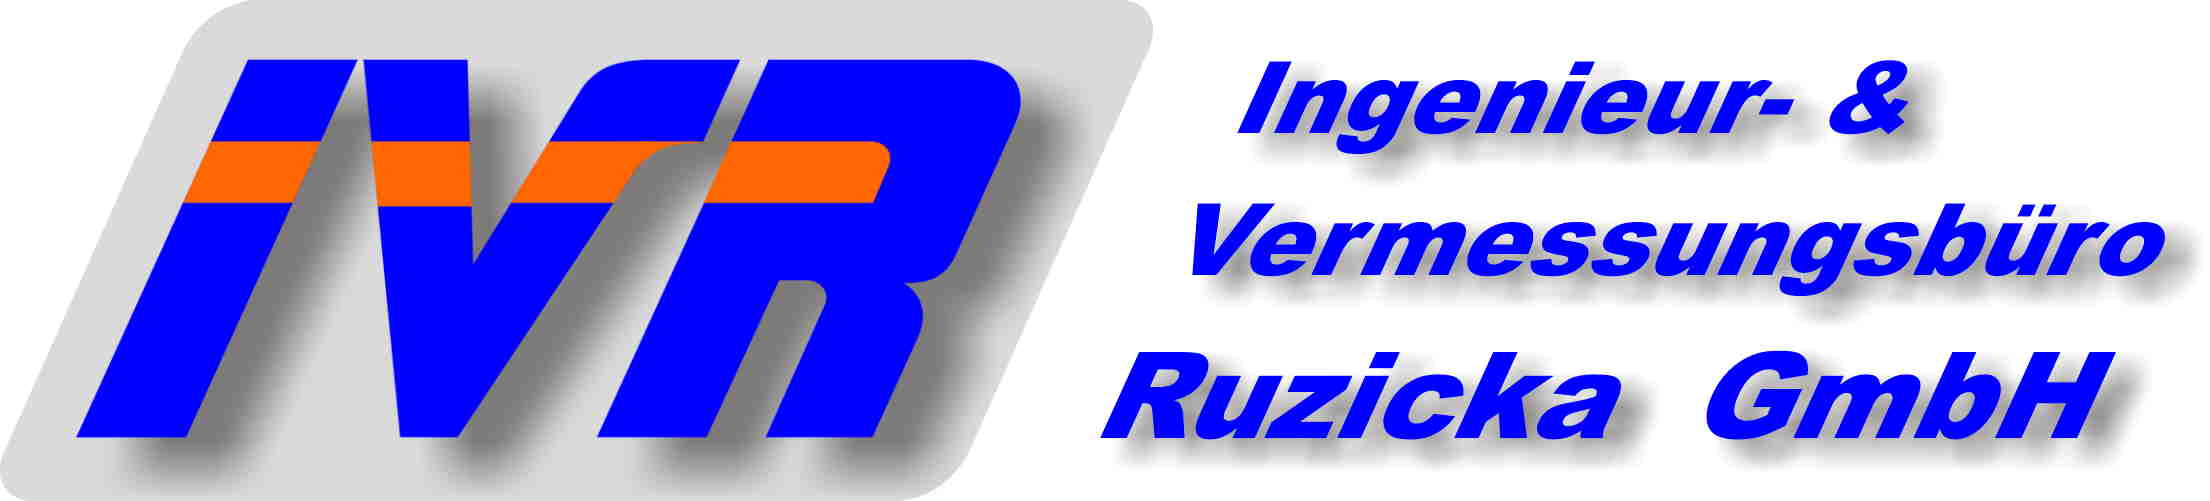 Ingenieur- & Vermessungsbüro Ruzicka GmbH - IVR GmbH